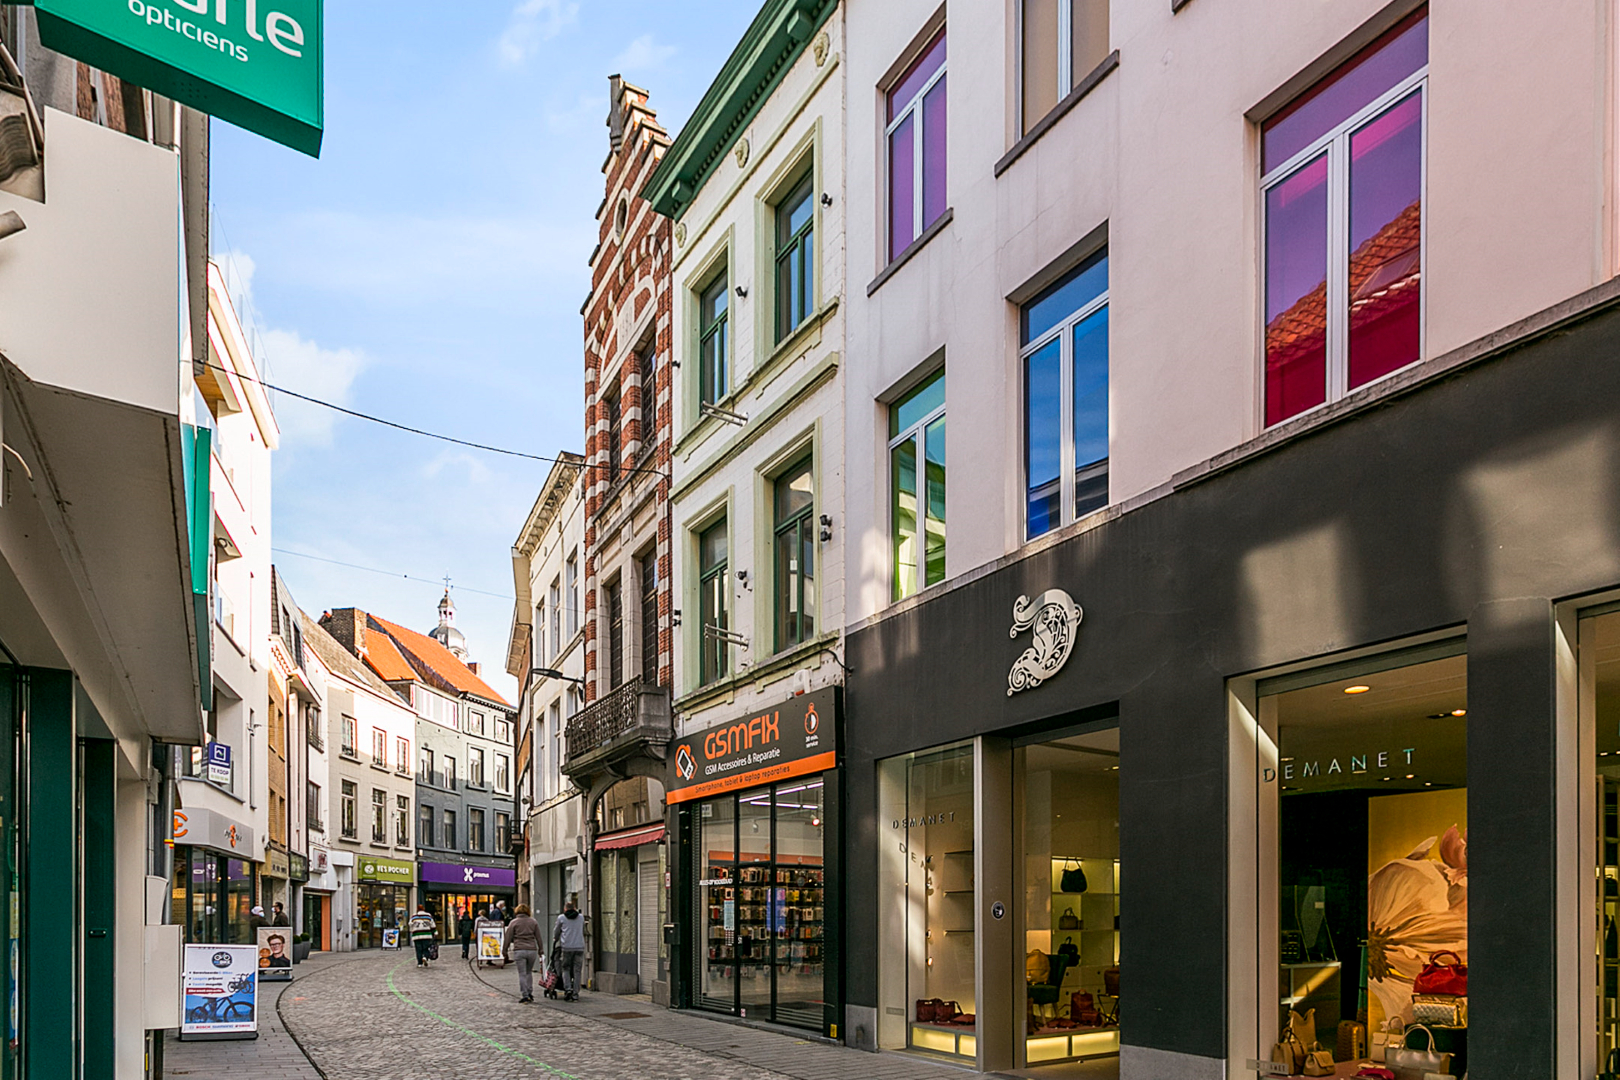 Verhuurd investeringspand op toplocatie in het centrum van Halle 